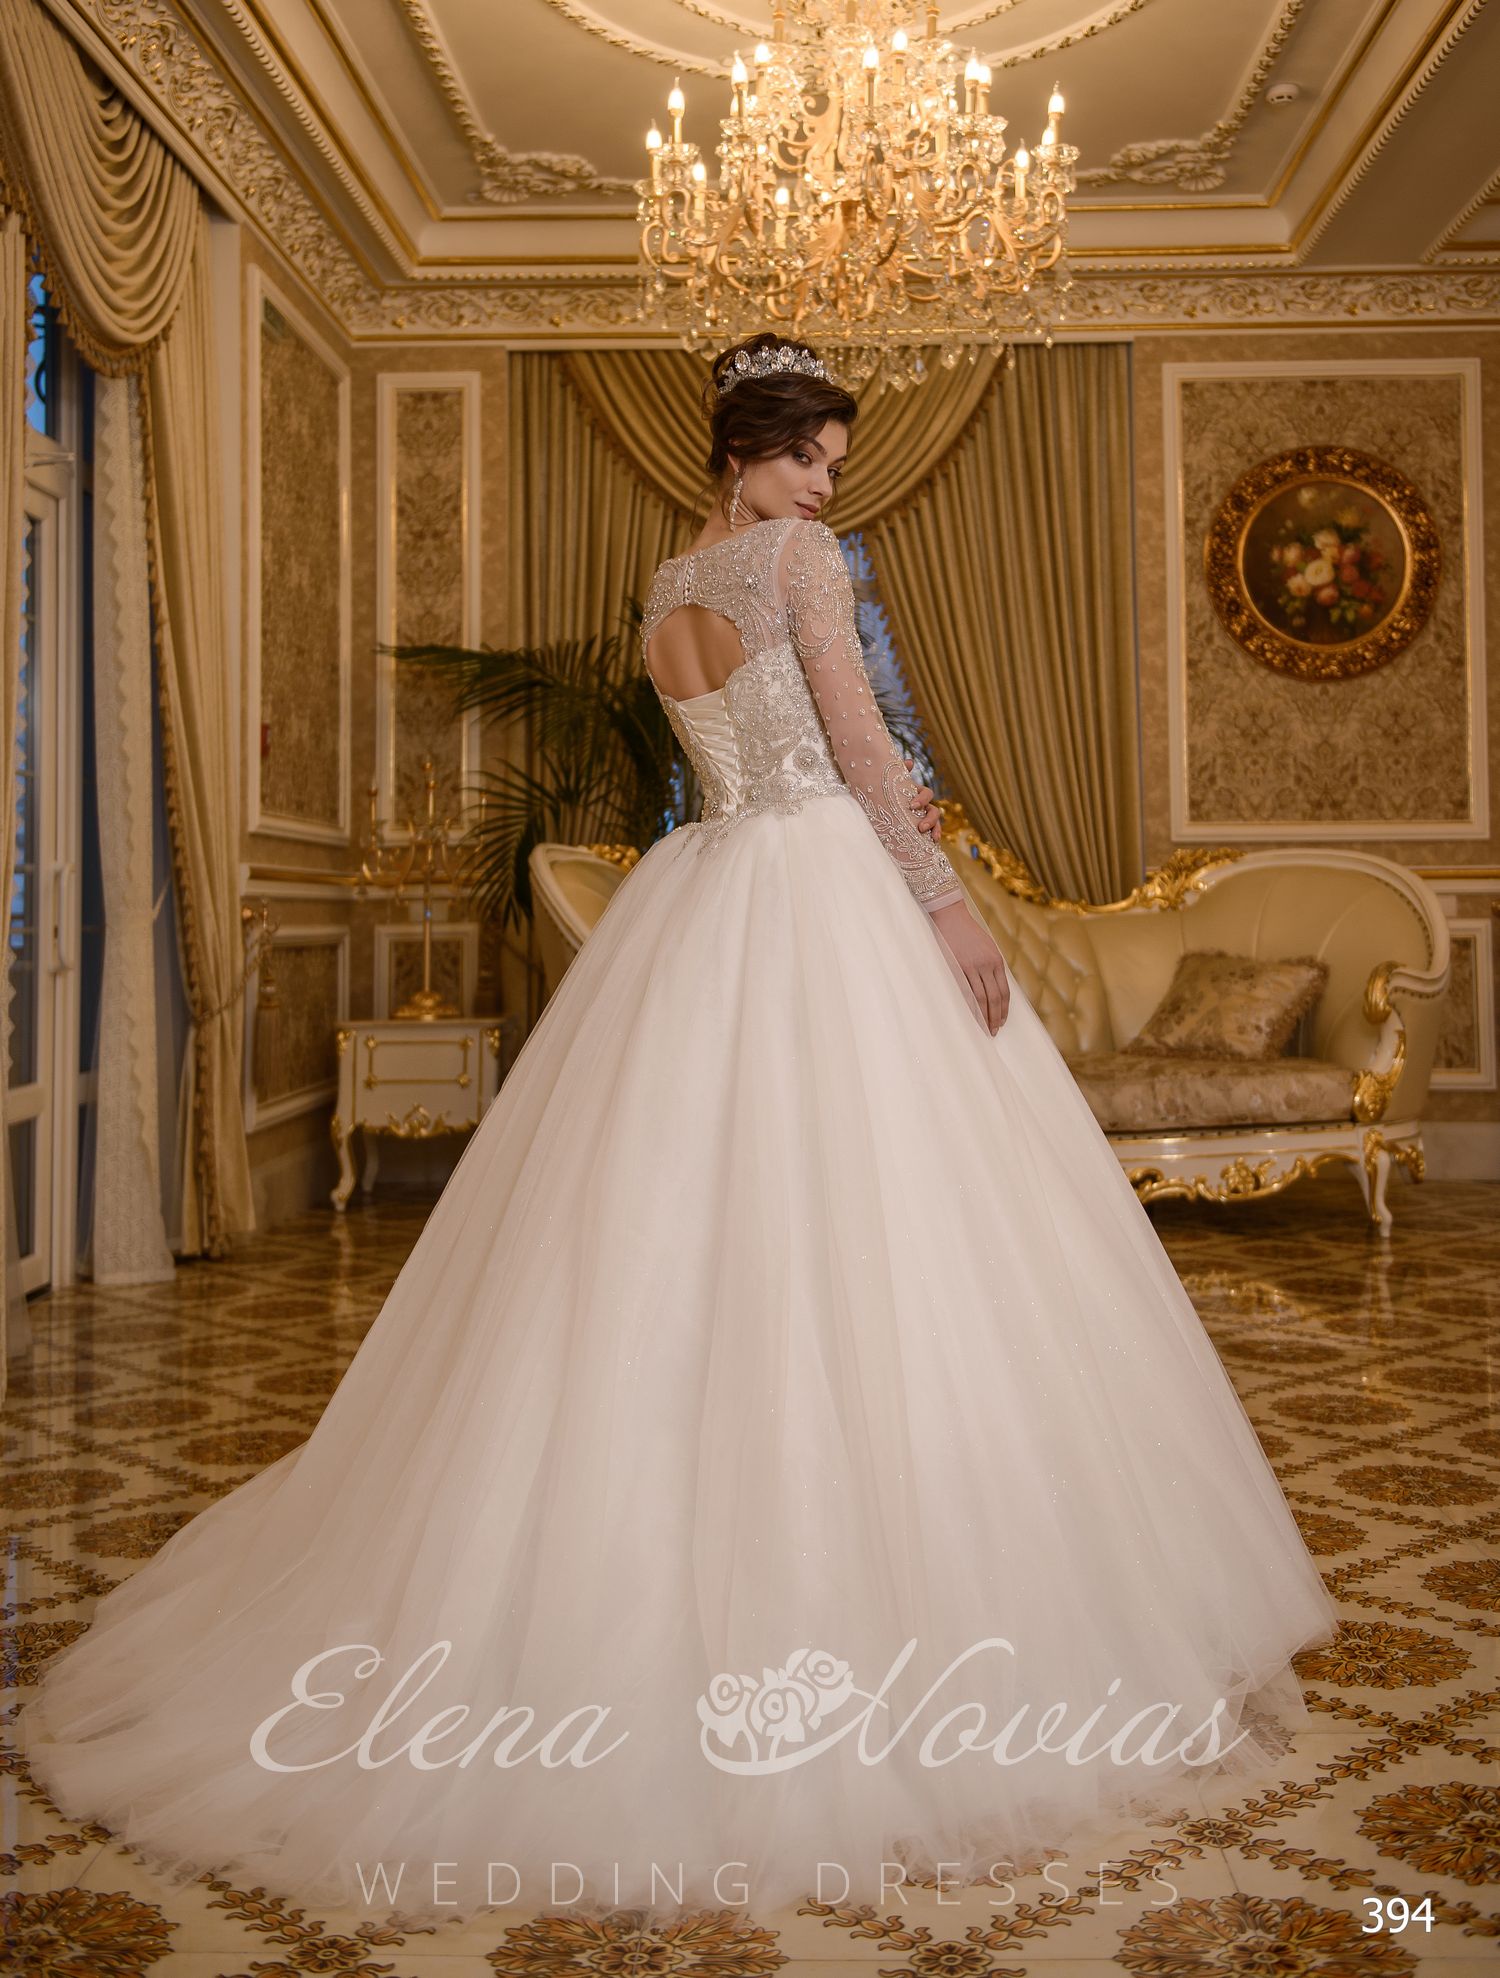 Luxury wedding dress by Elenanovias